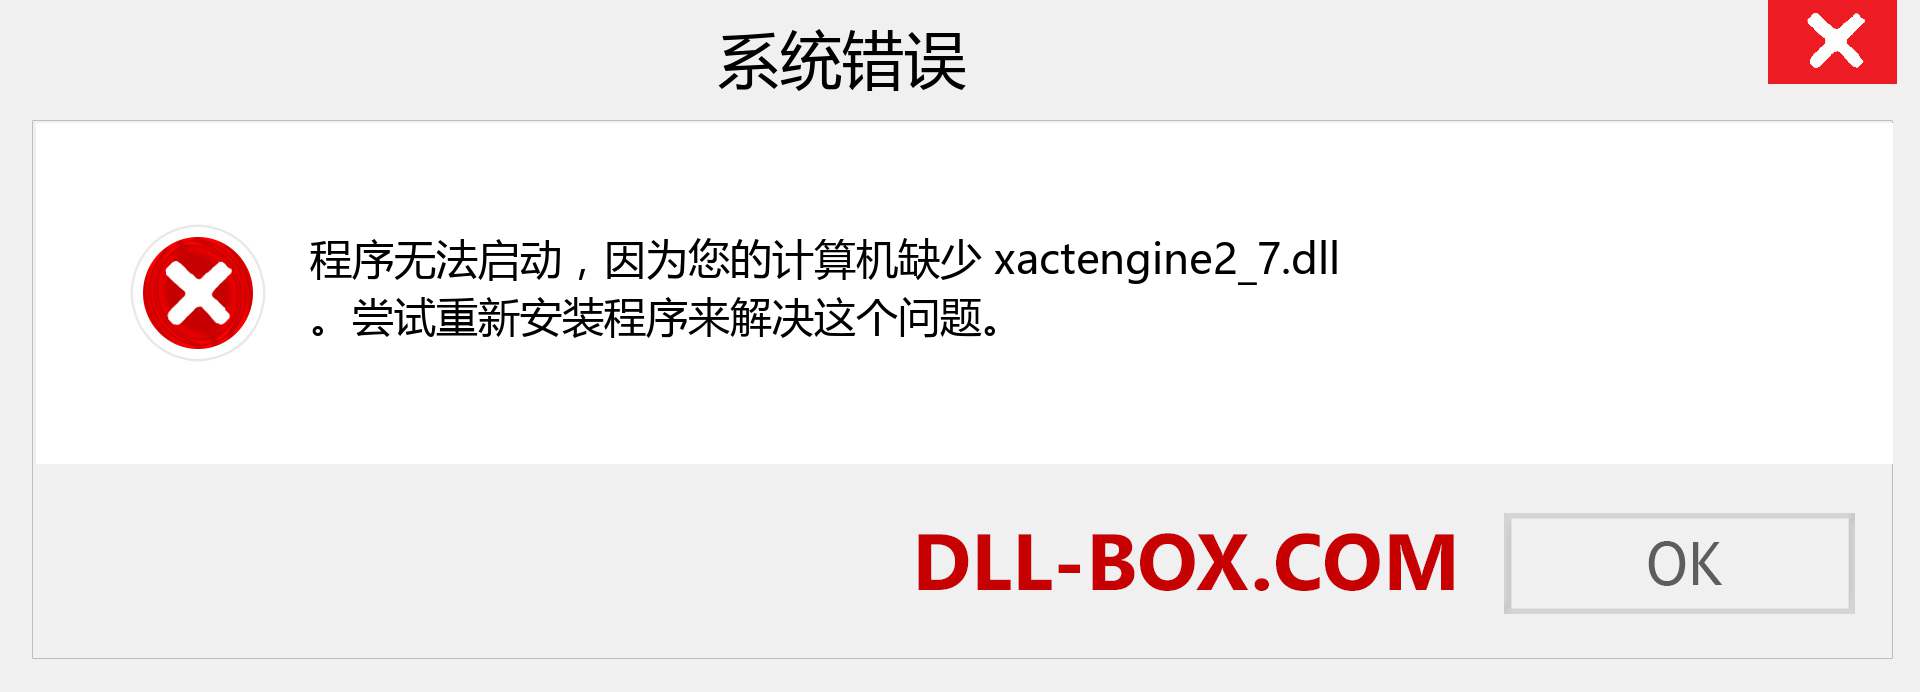 xactengine2_7.dll 文件丢失？。 适用于 Windows 7、8、10 的下载 - 修复 Windows、照片、图像上的 xactengine2_7 dll 丢失错误